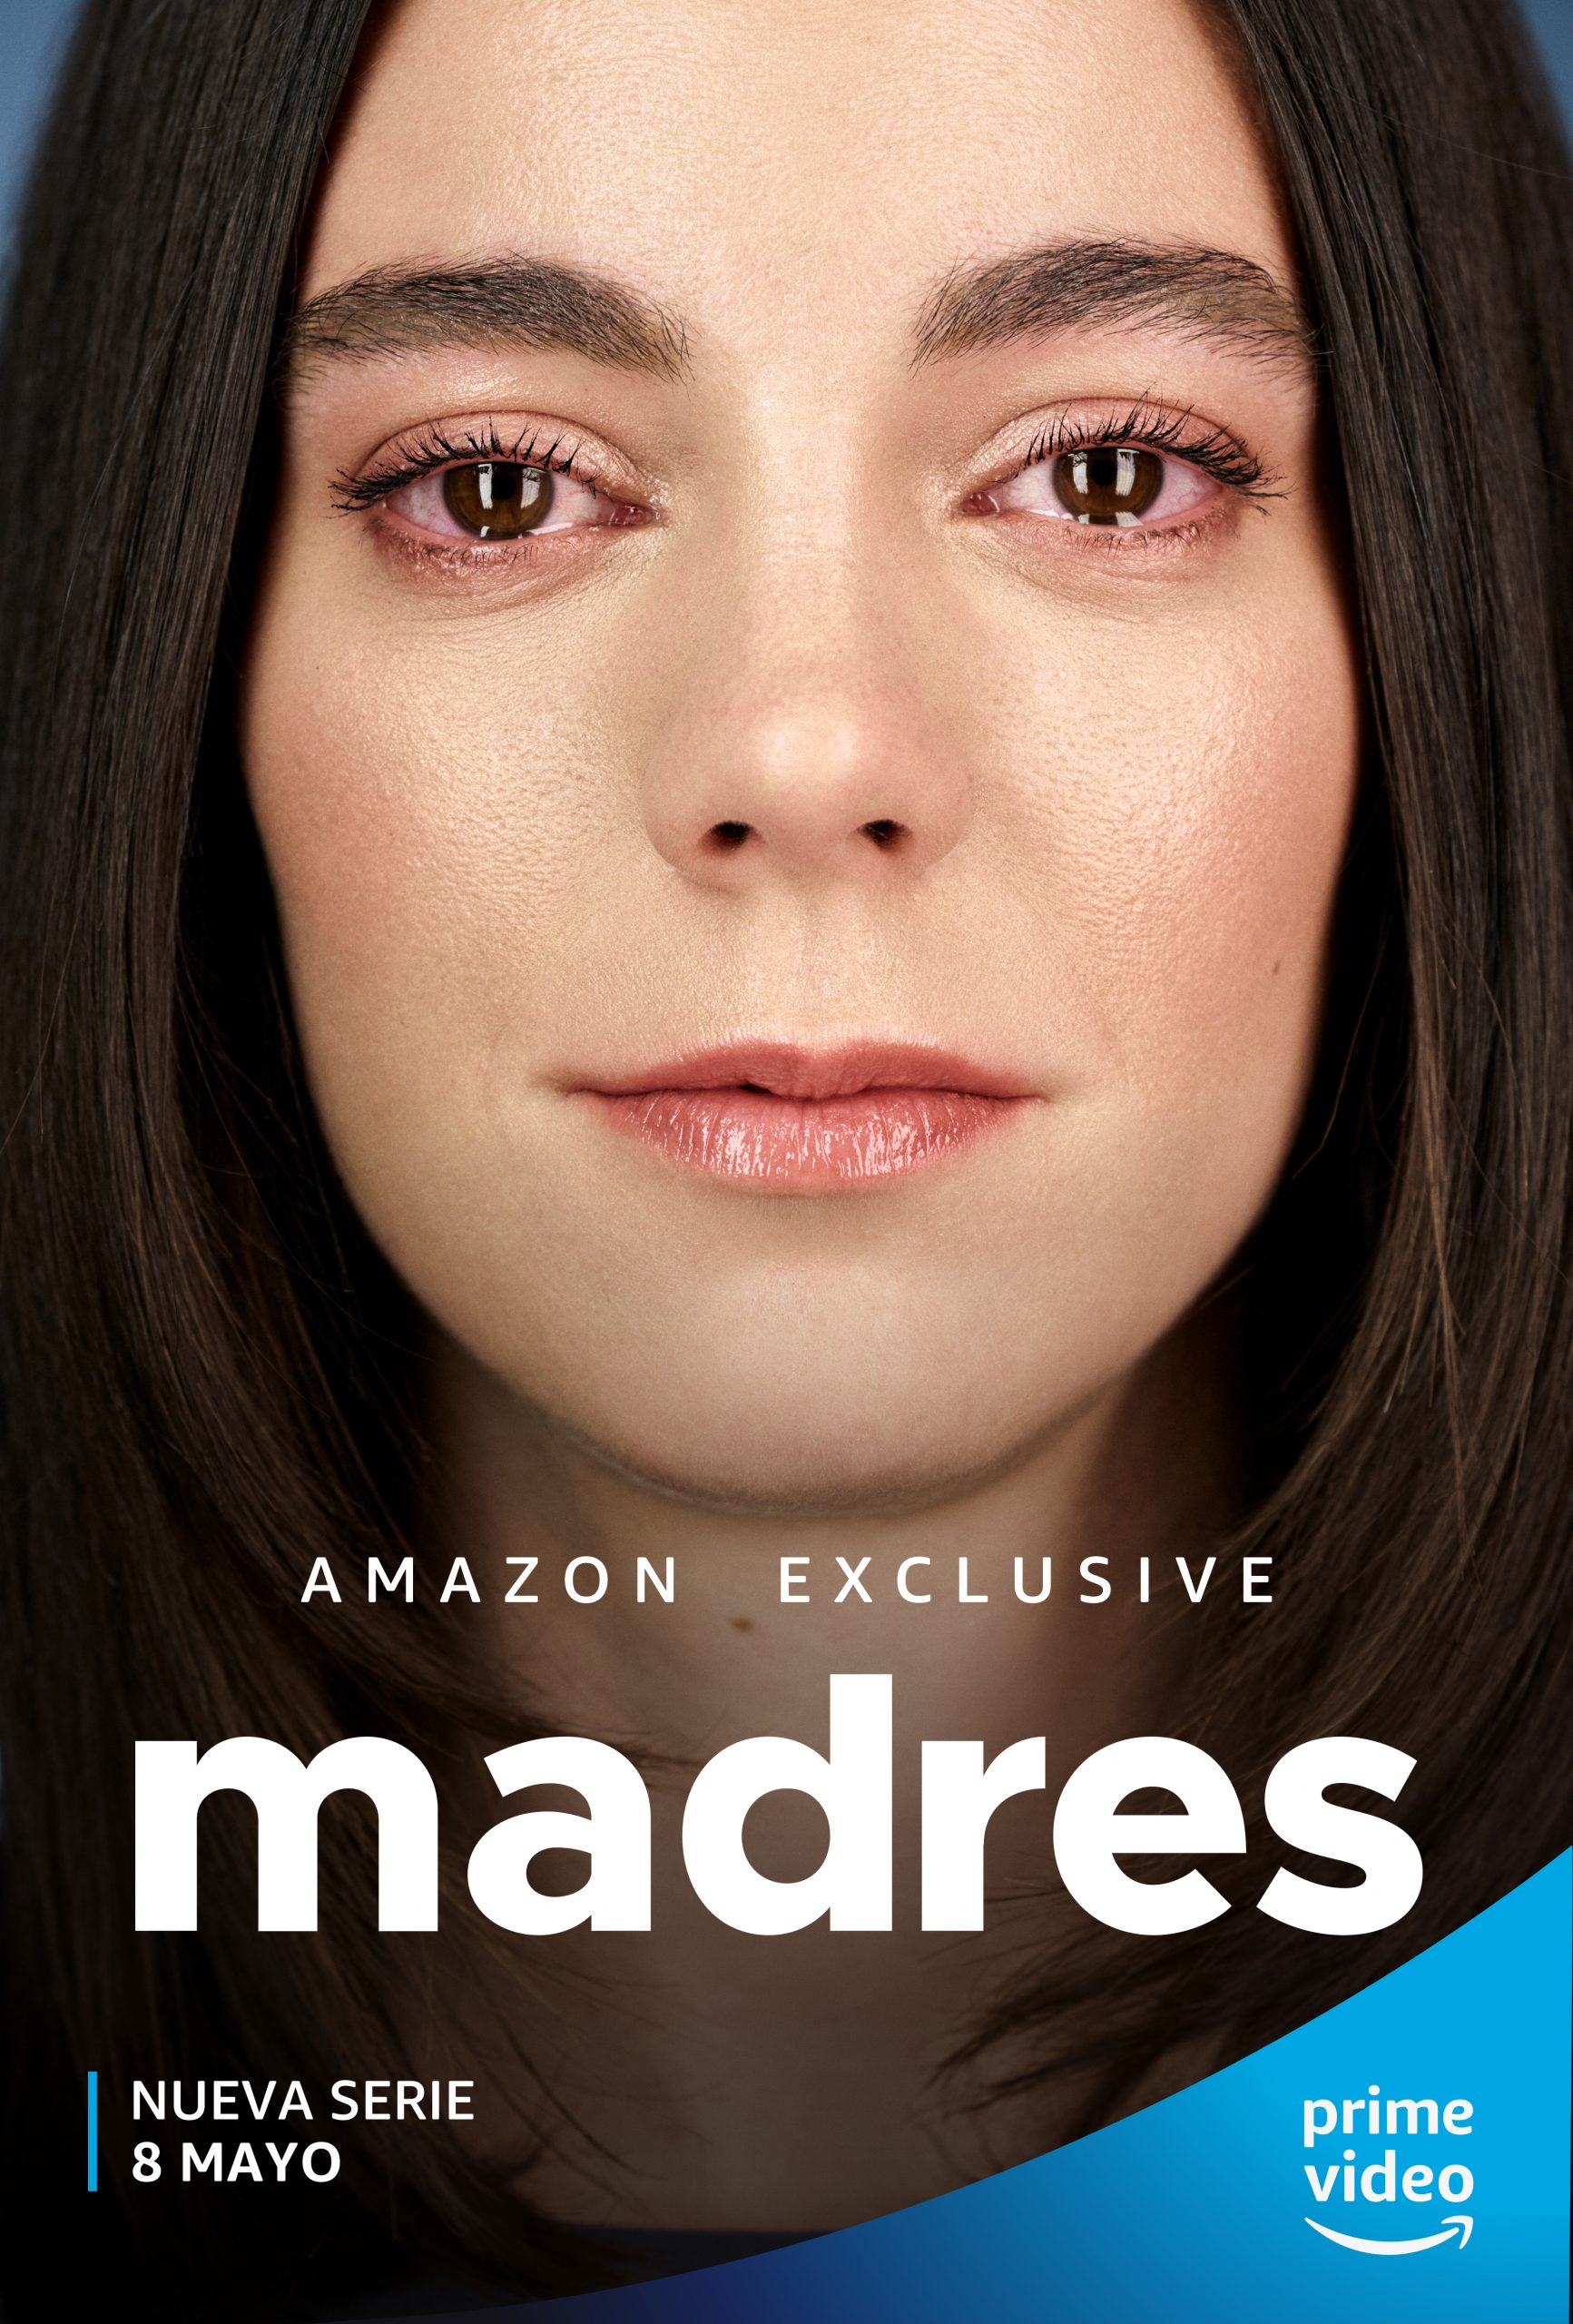 Campaña gráfica elaborada por Richard Ramos y Cristina López junto a Enri Mür Studio para la serie "Madres" de Prime Video.